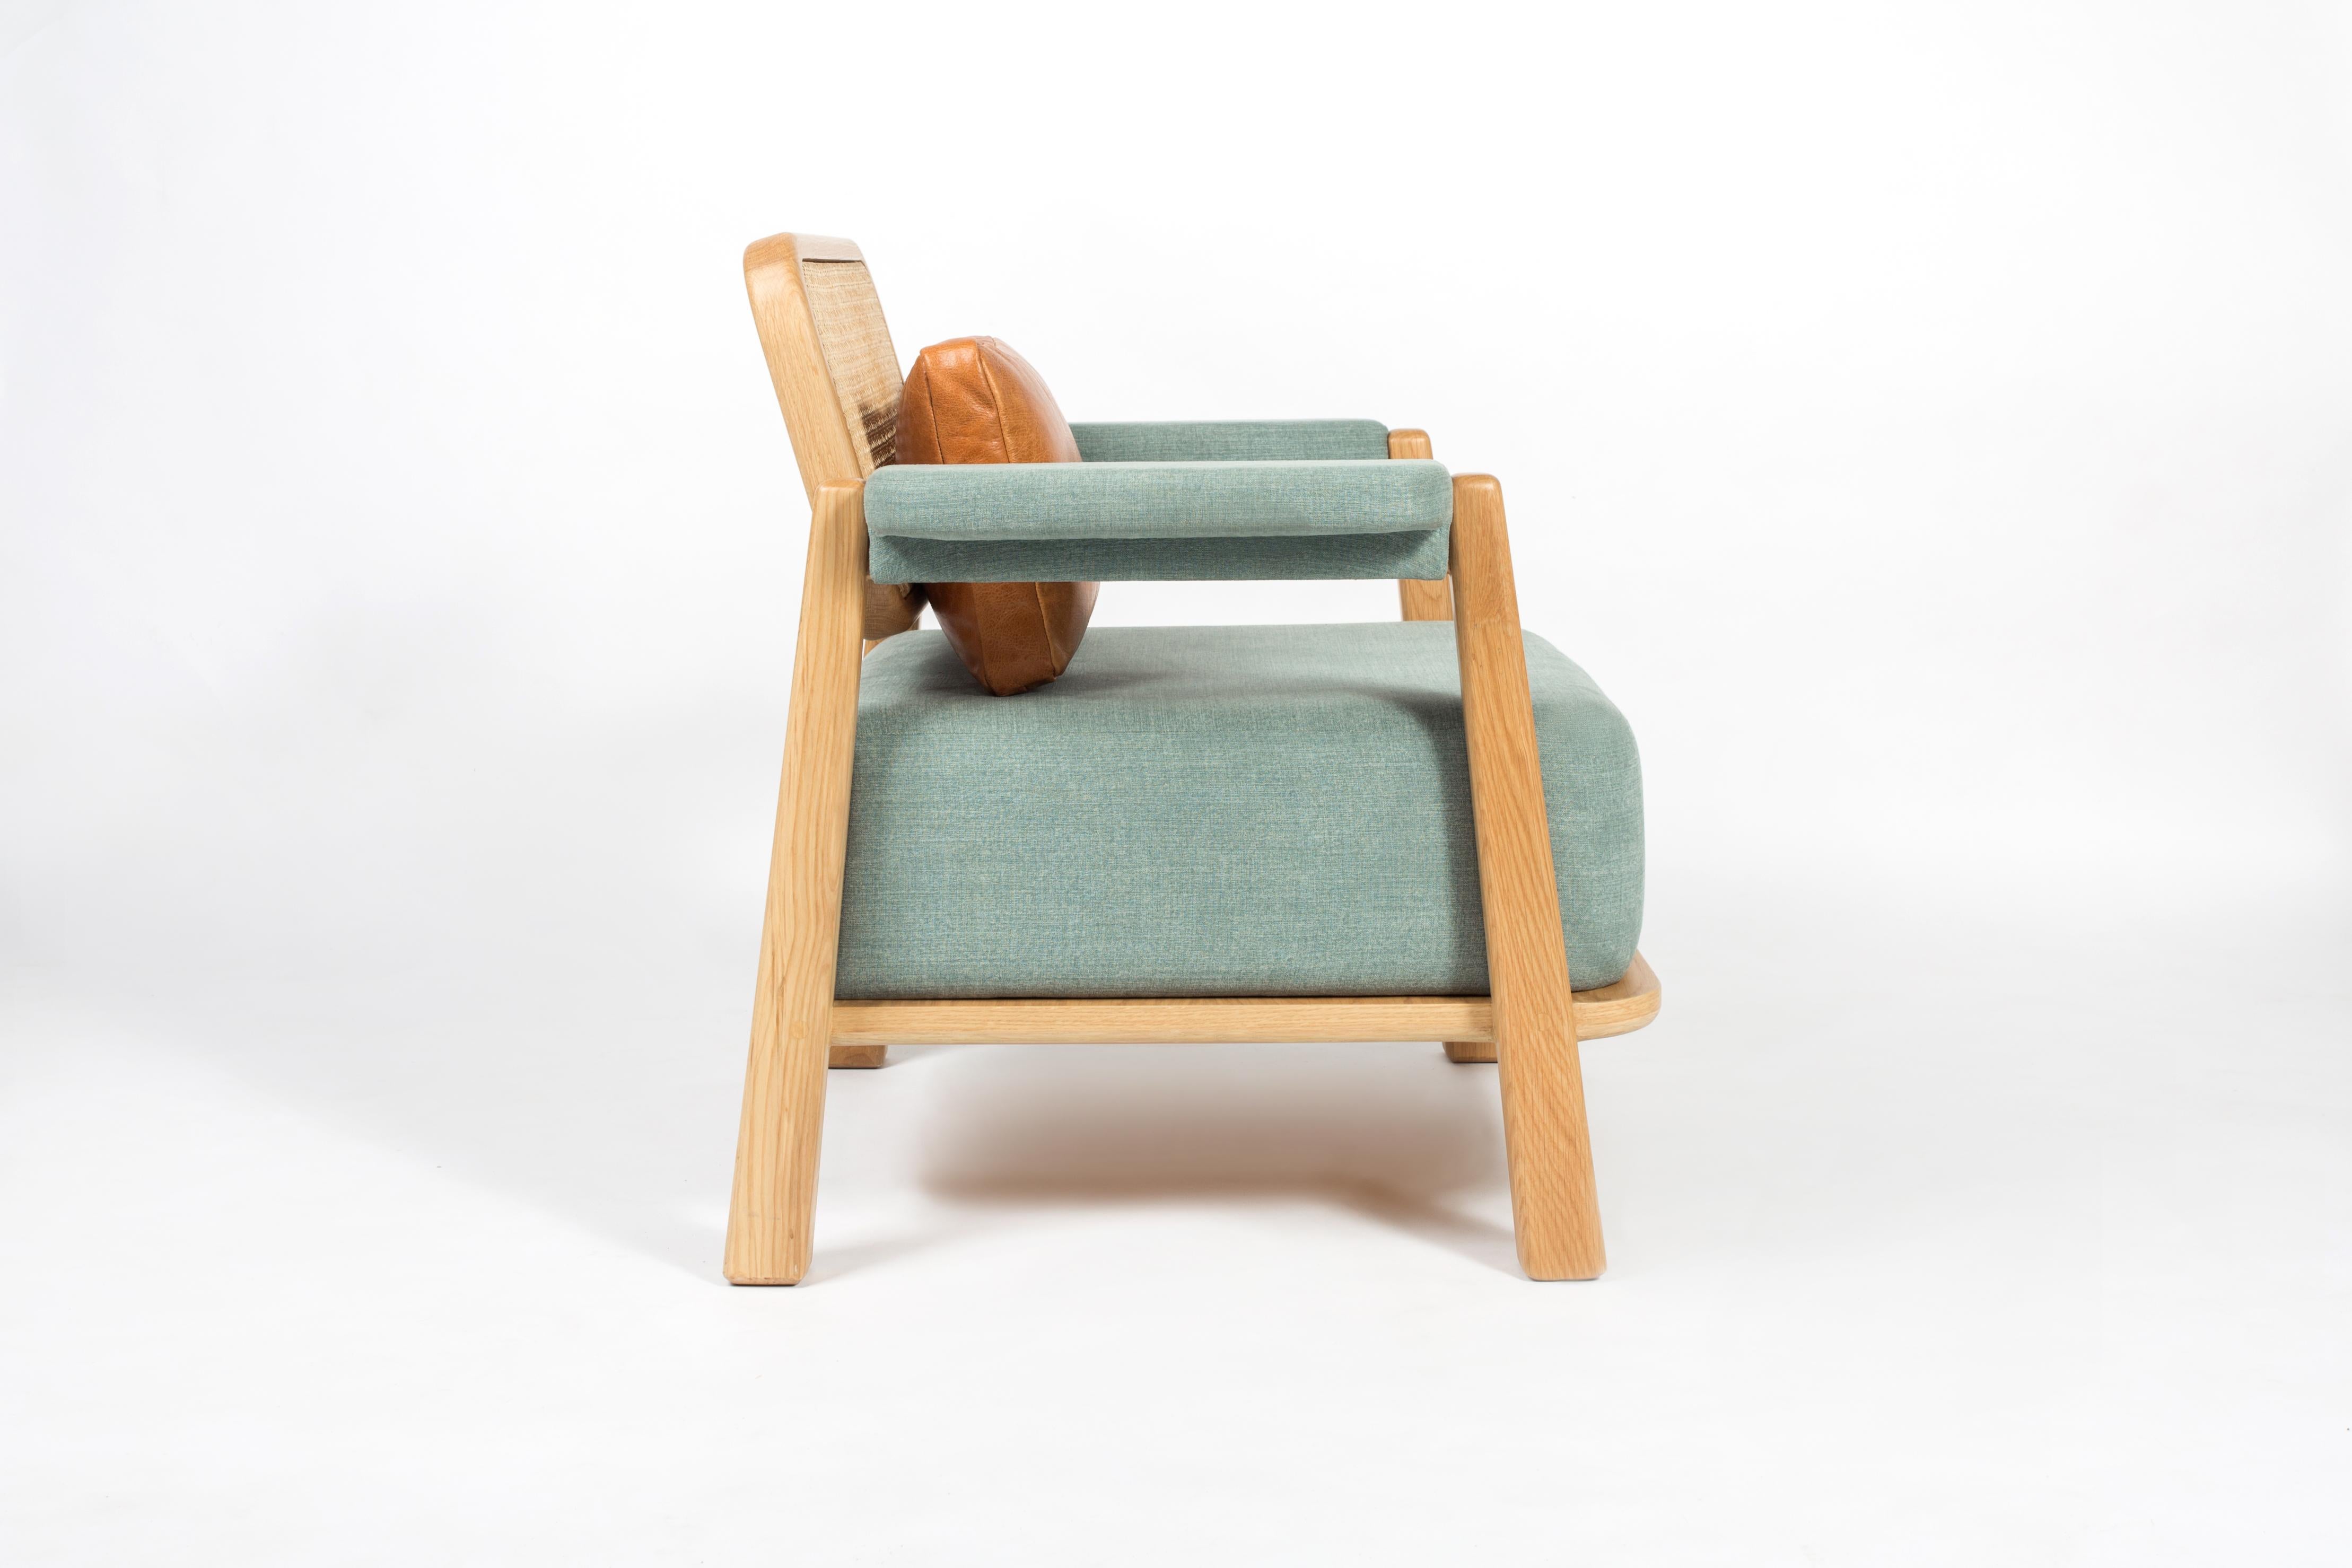 Ce fauteuil distinctif peut ajouter de l'audace à votre salon. L'assise moelleuse à gros coussin le rend très confortable et le petit coussin en cuir soutient parfaitement le bas du dos, ce qui le rend encore plus confortable. Parfait pour les